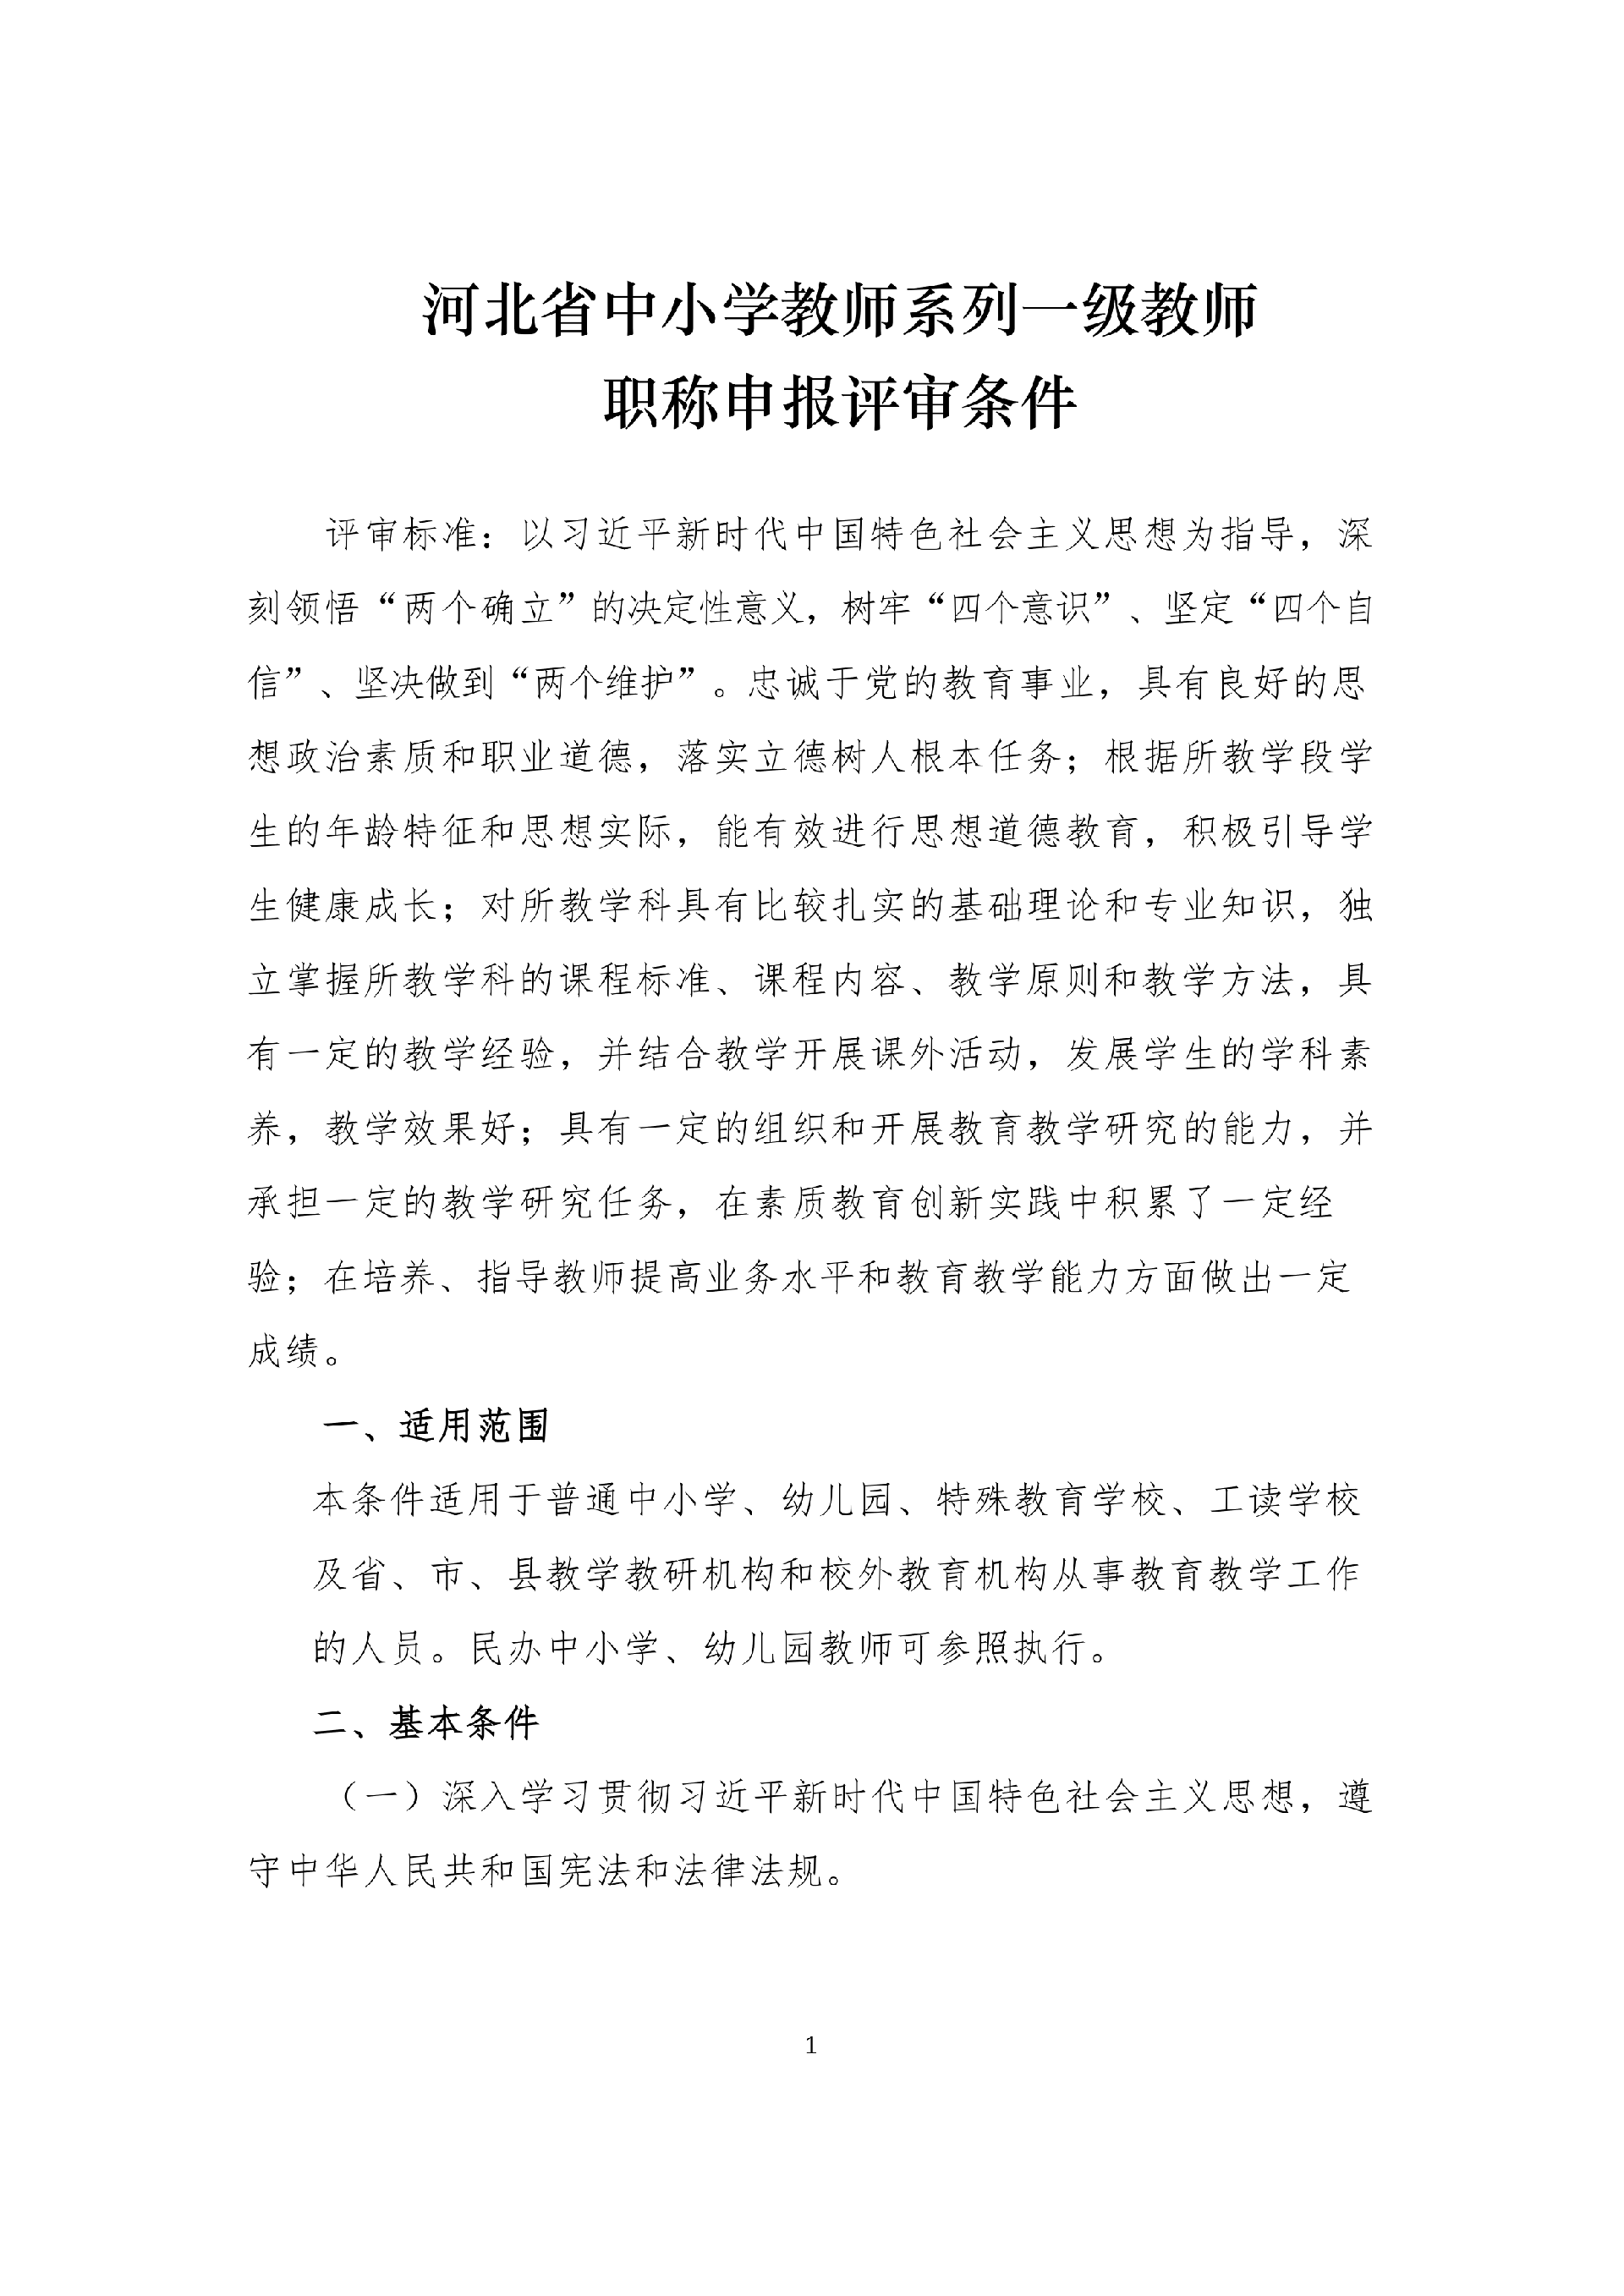 河北省中小学教师系列一级教师职称申报评审条件_1.png